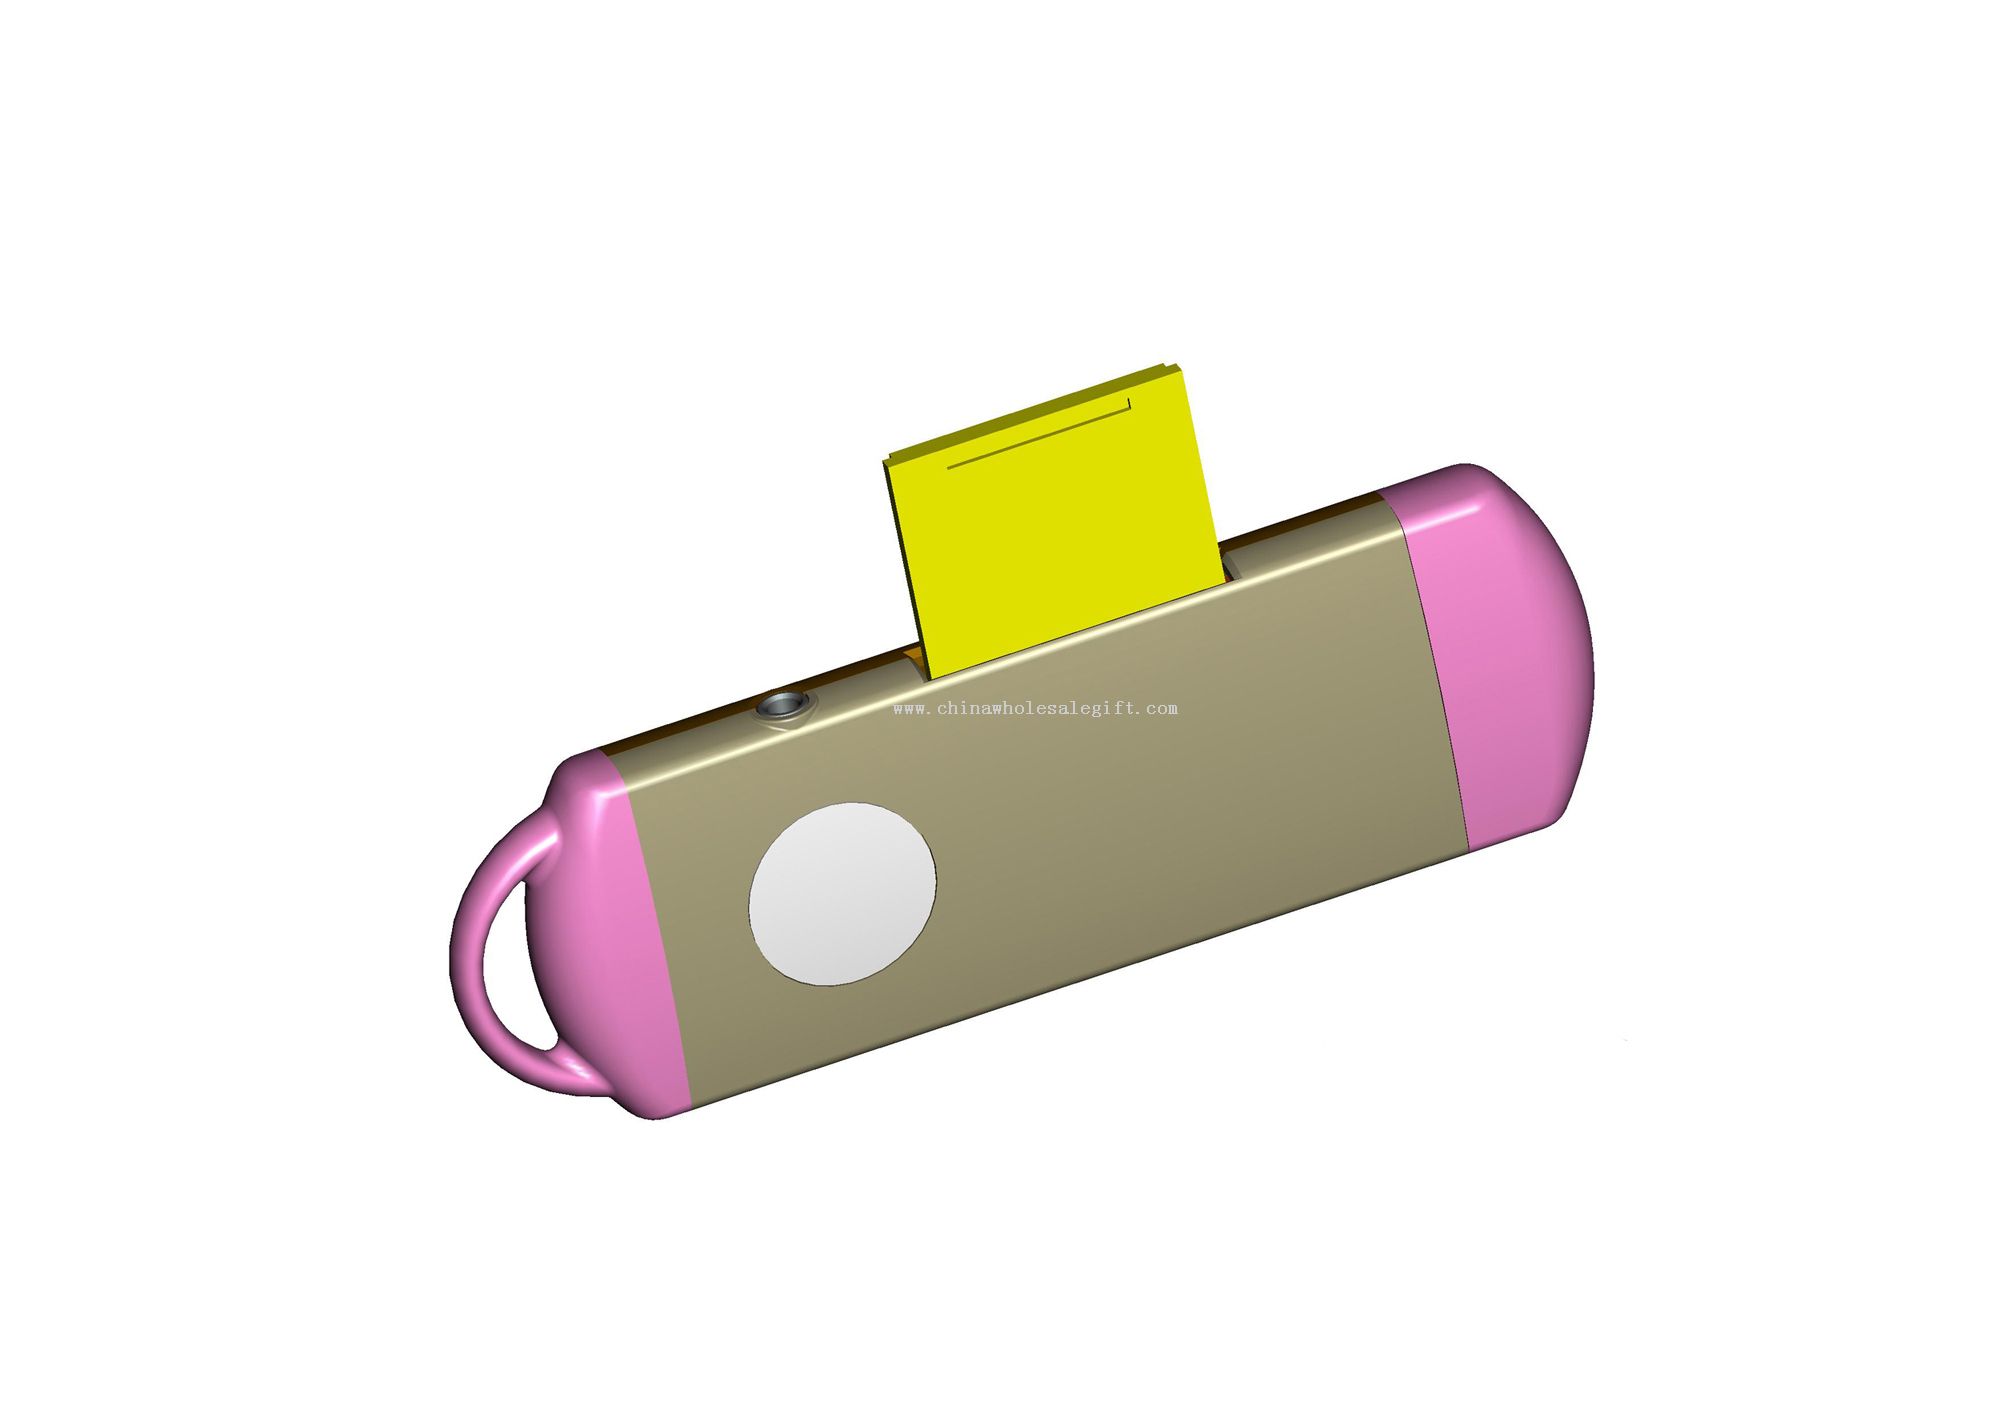 قرص فلاش USB مع قارئ بطاقات SD/MMC